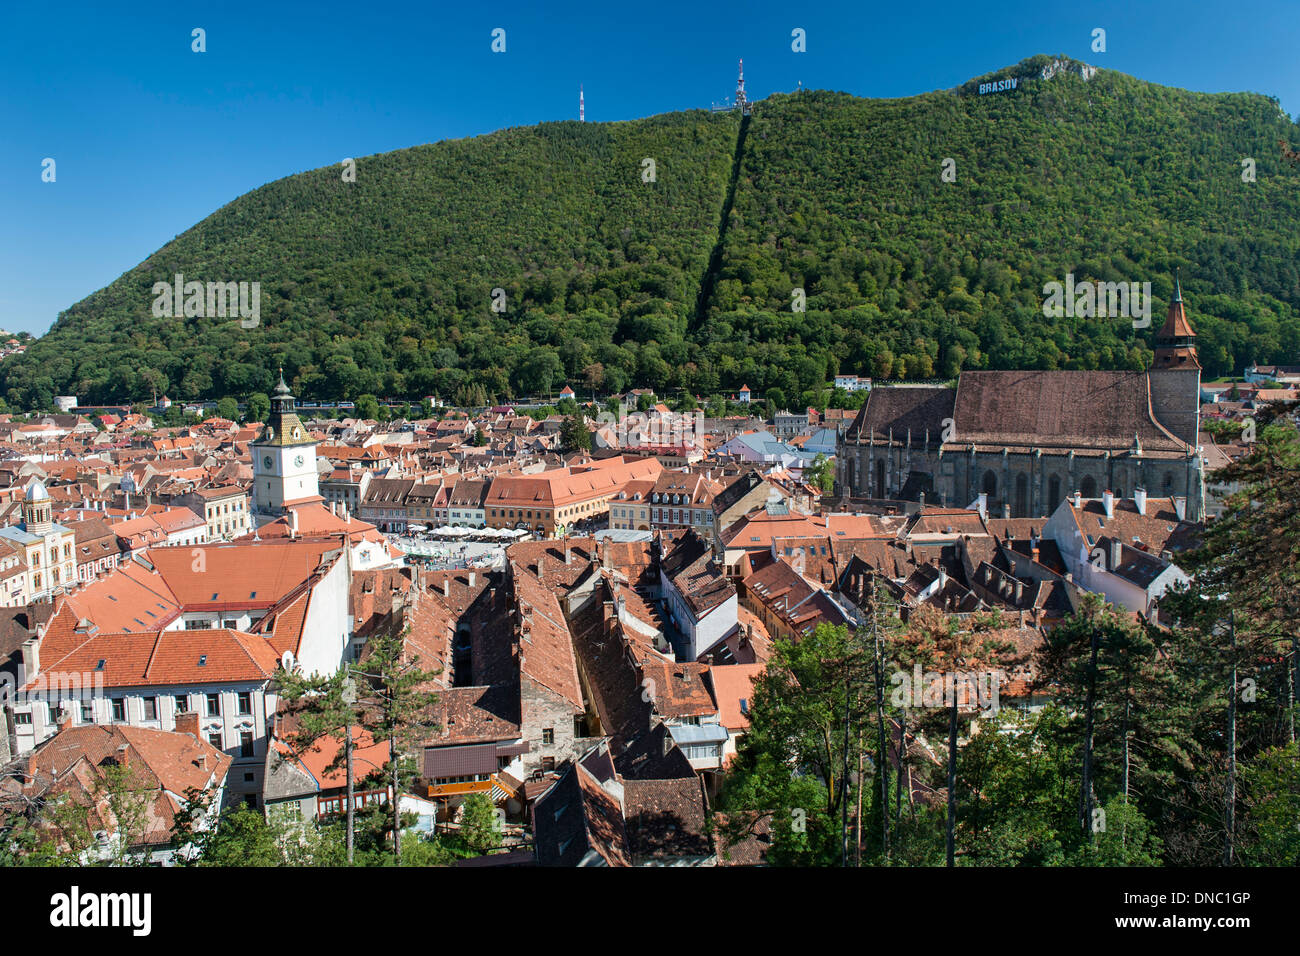 Vista de la iglesia negra y el casco antiguo de la ciudad de Brasov, una ciudad en el centro de la región rumana de Transilvania. Foto de stock